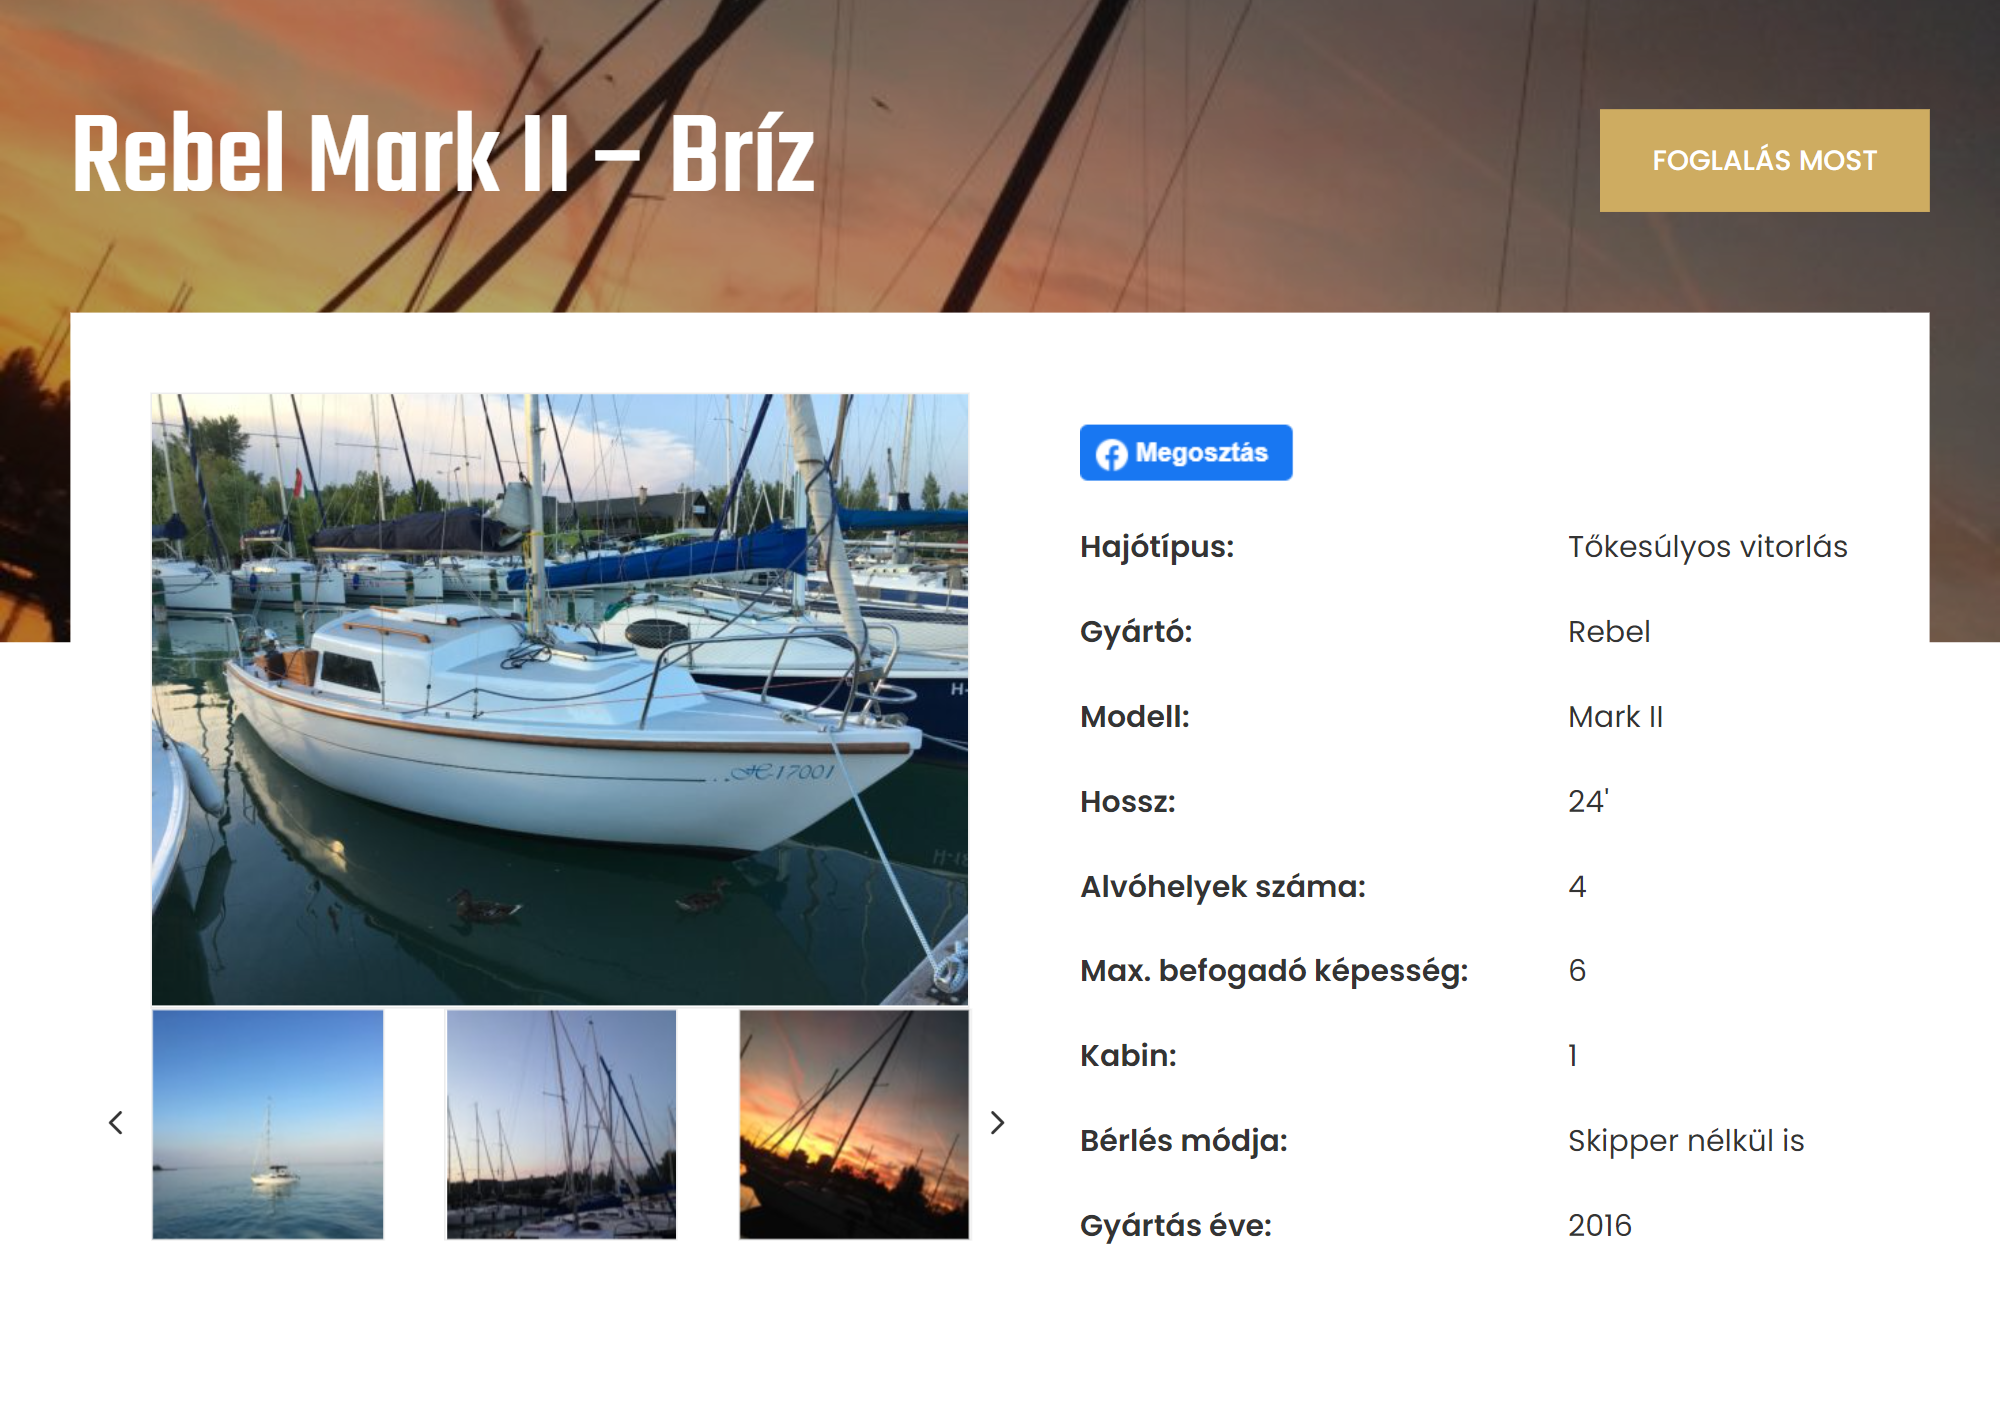 Сайт, на котором мы бронировали яхту, полностью на венгерском языке, но с «Гугл-переводчиком» все становится понятно